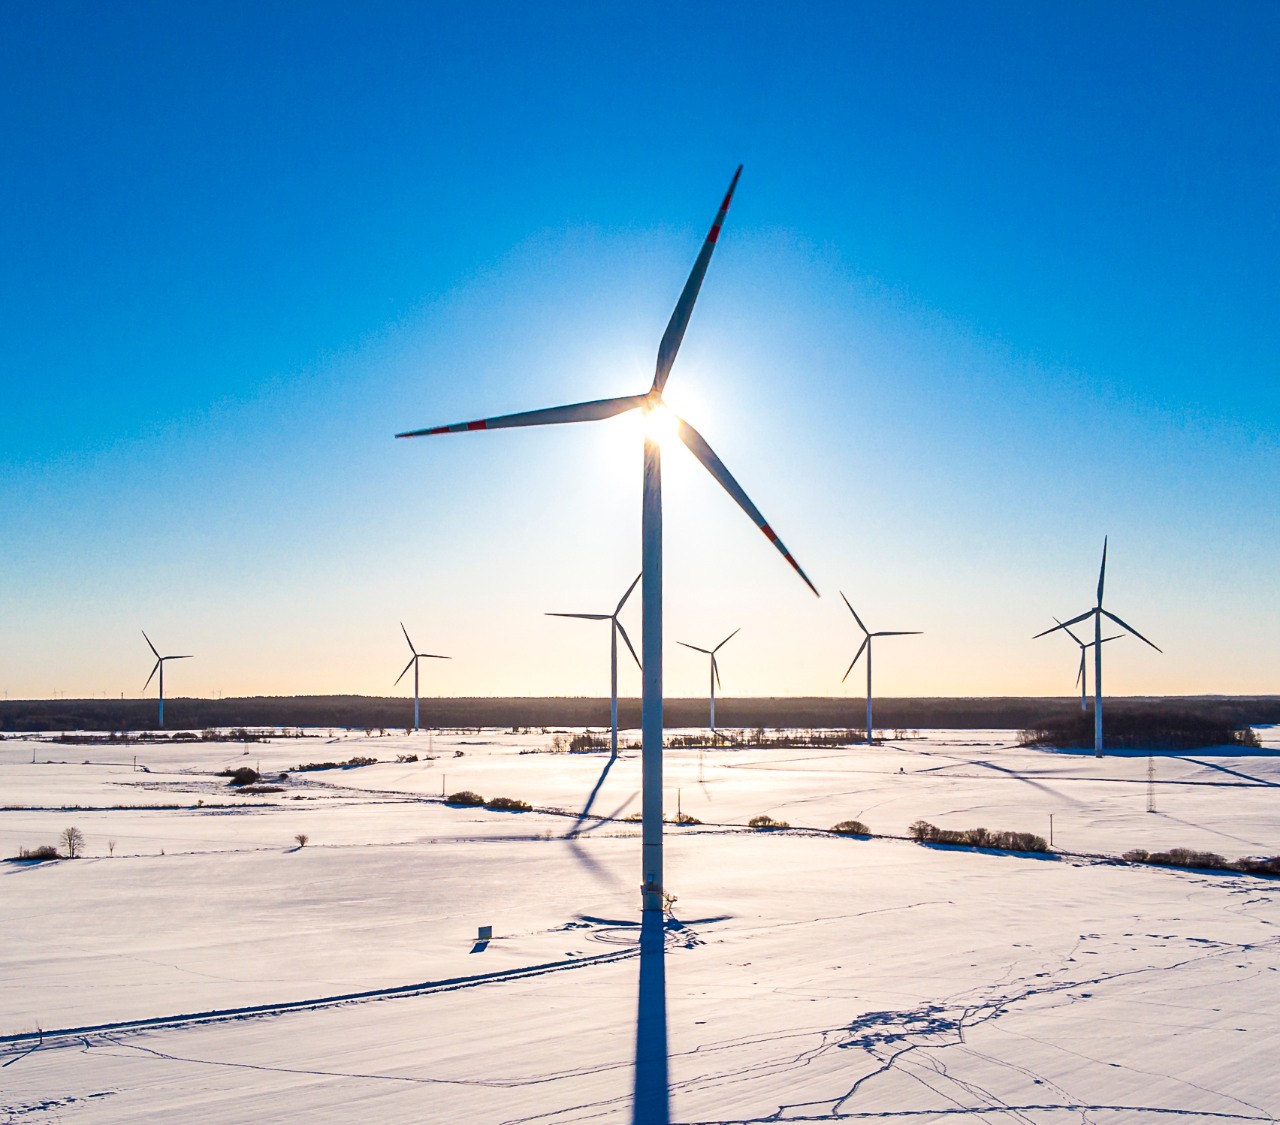 Źródła energii odnawialnej i transformacja energetyczna - Grupa ORLEN. Wiatraki w zimowej scenerii pracujące nad wytwarzaniem energii odnawialnej.